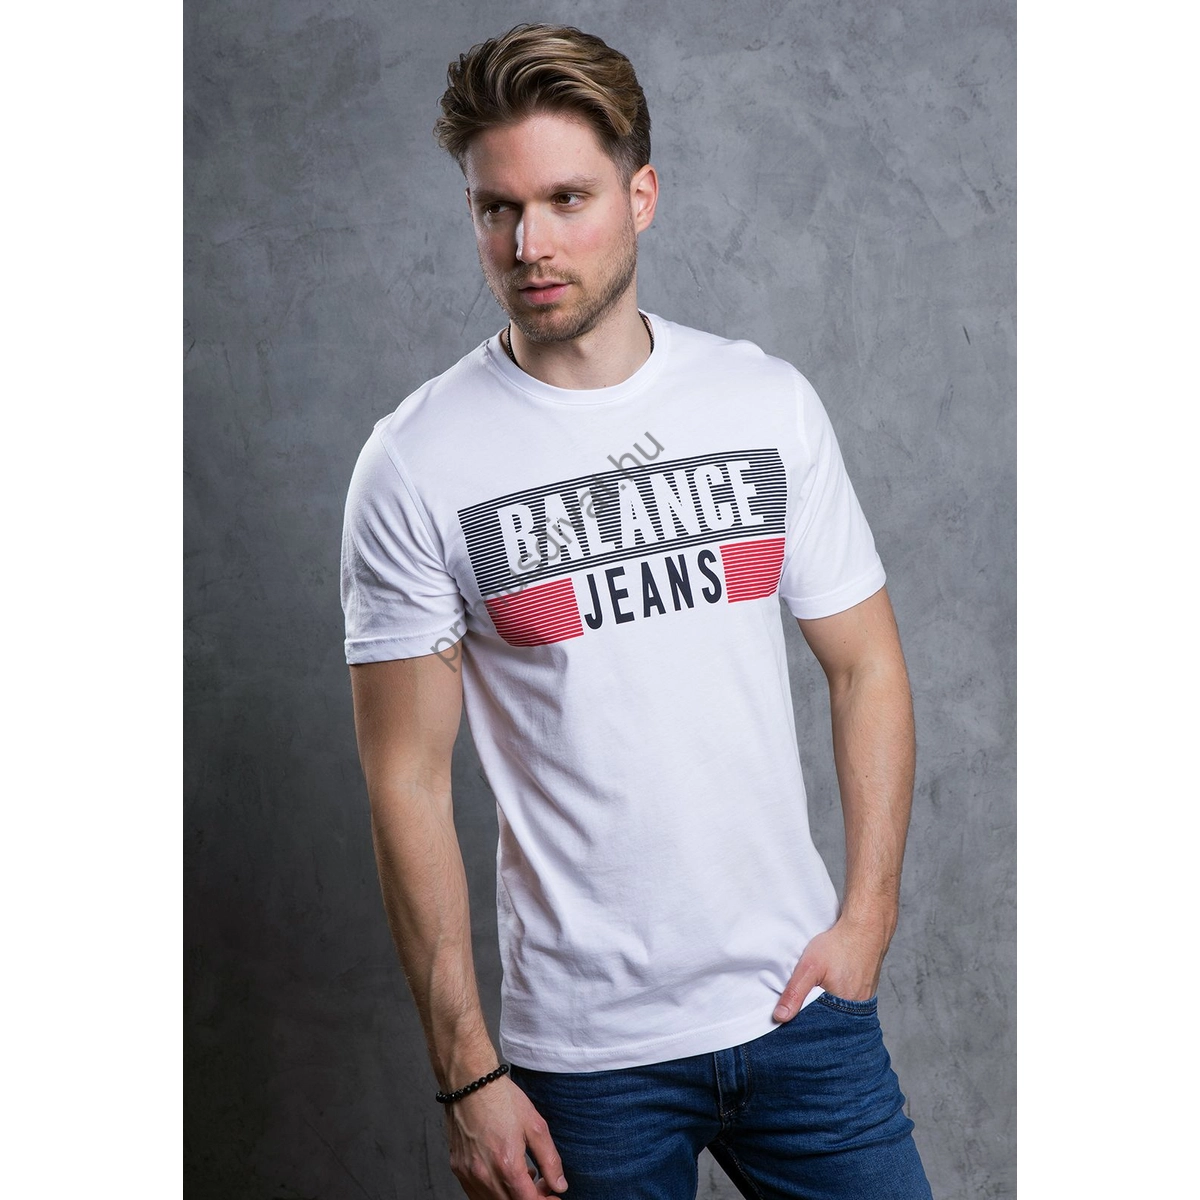 Balance környakas fehér rövid ujjú Reffles póló, mellén nagyméretű fekete-piros márkafeliratos nyomattal